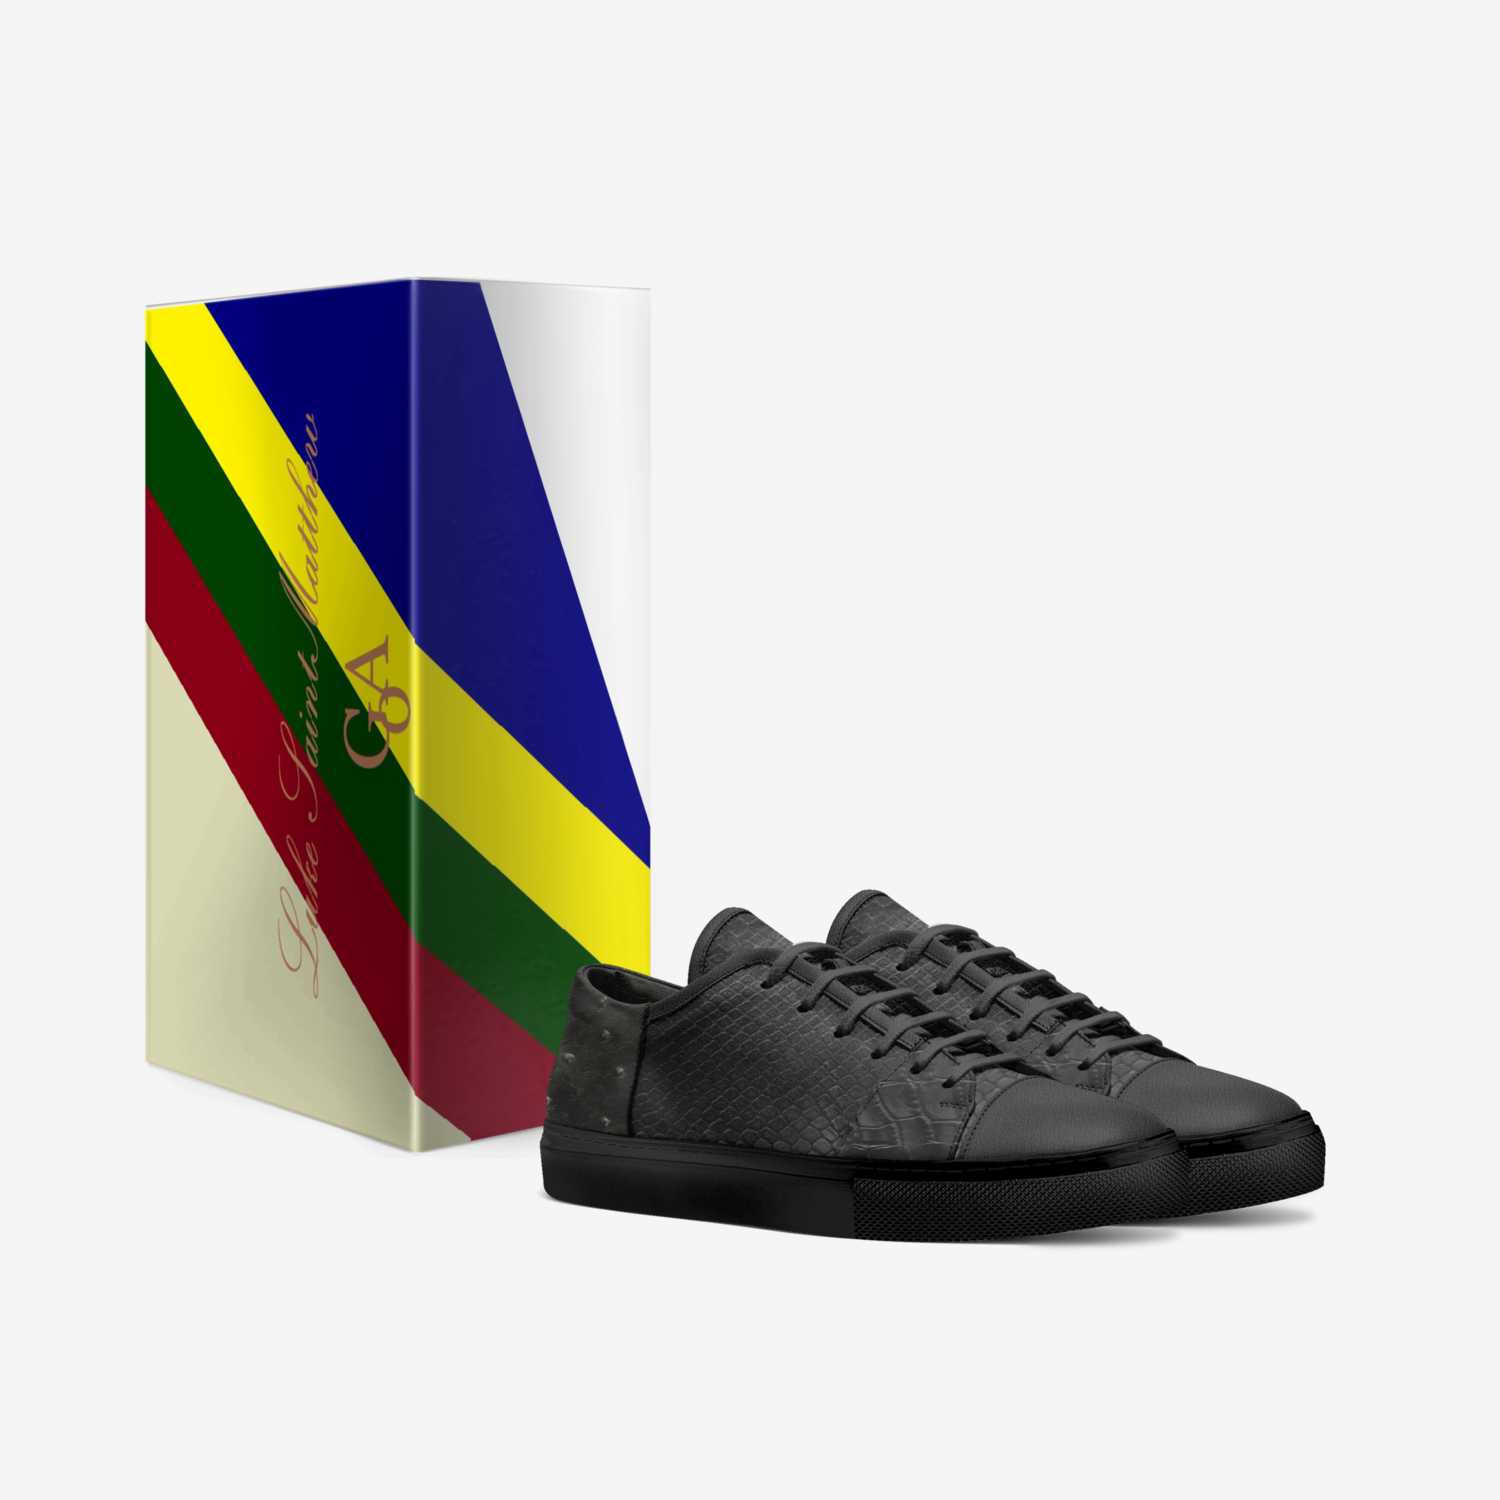 DARK WINTER custom made in Italy shoes by Luke Saintmatthews | Box view